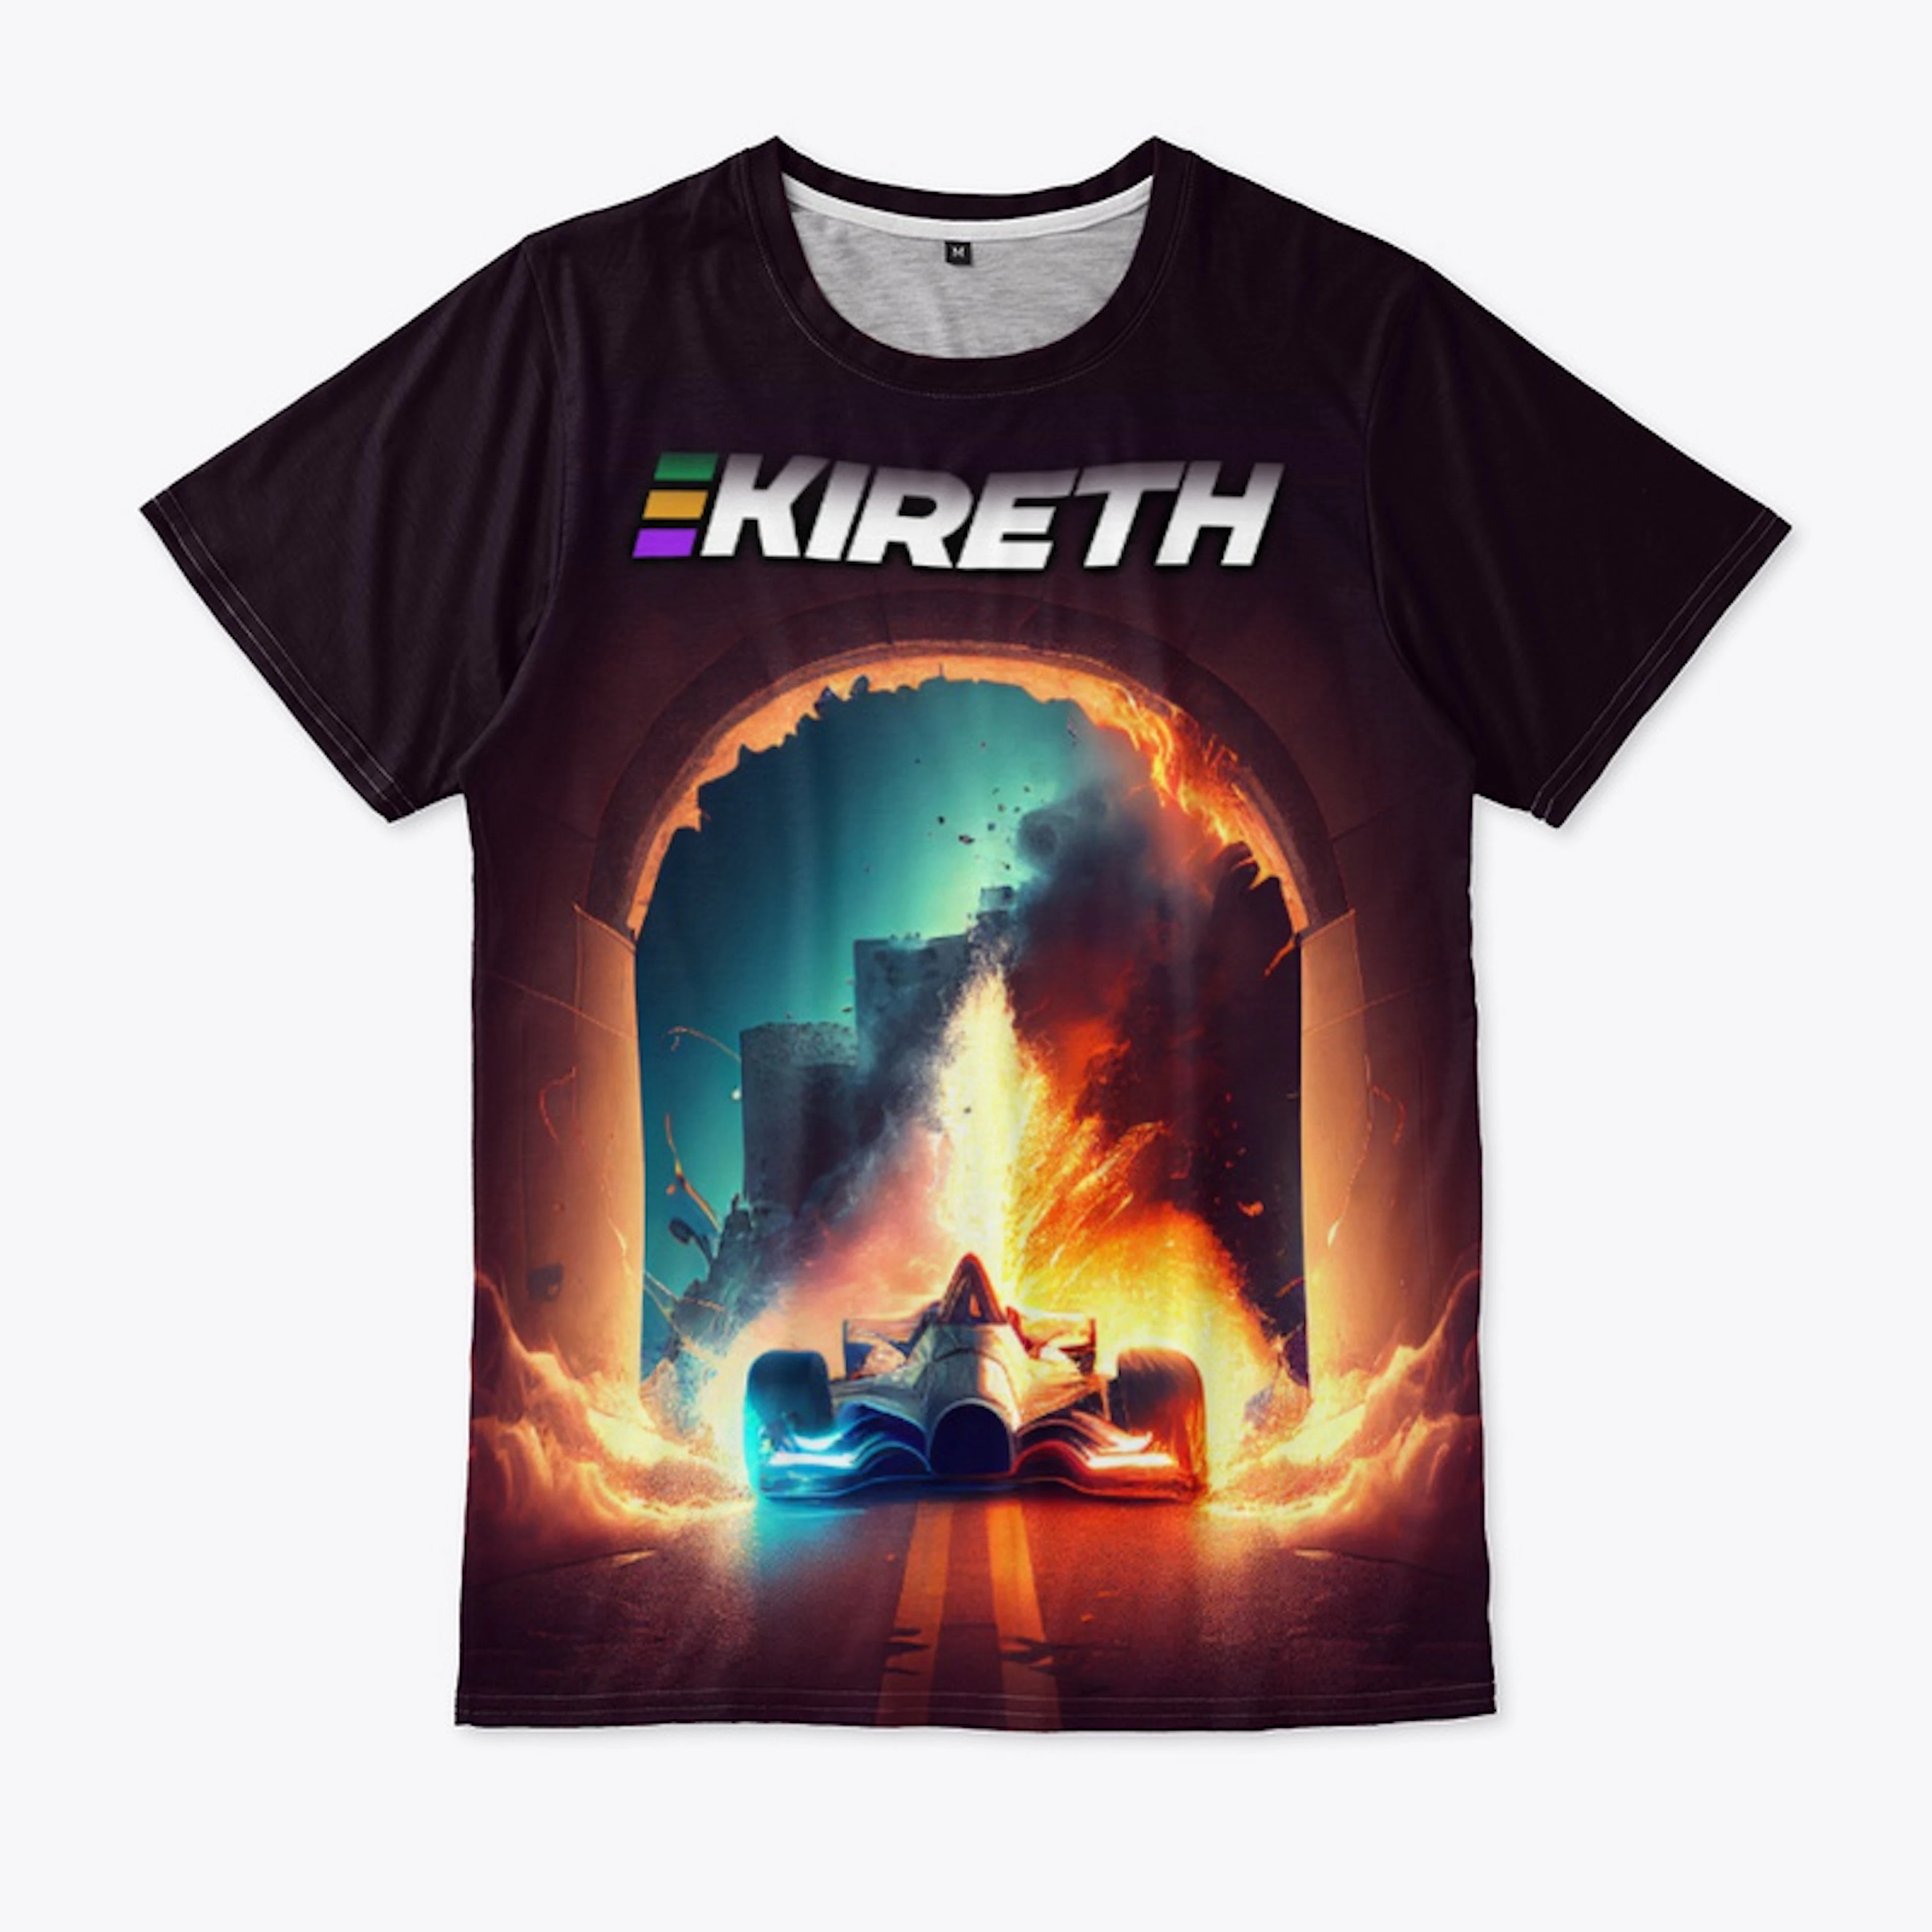 Kireth FireCar T-shirt